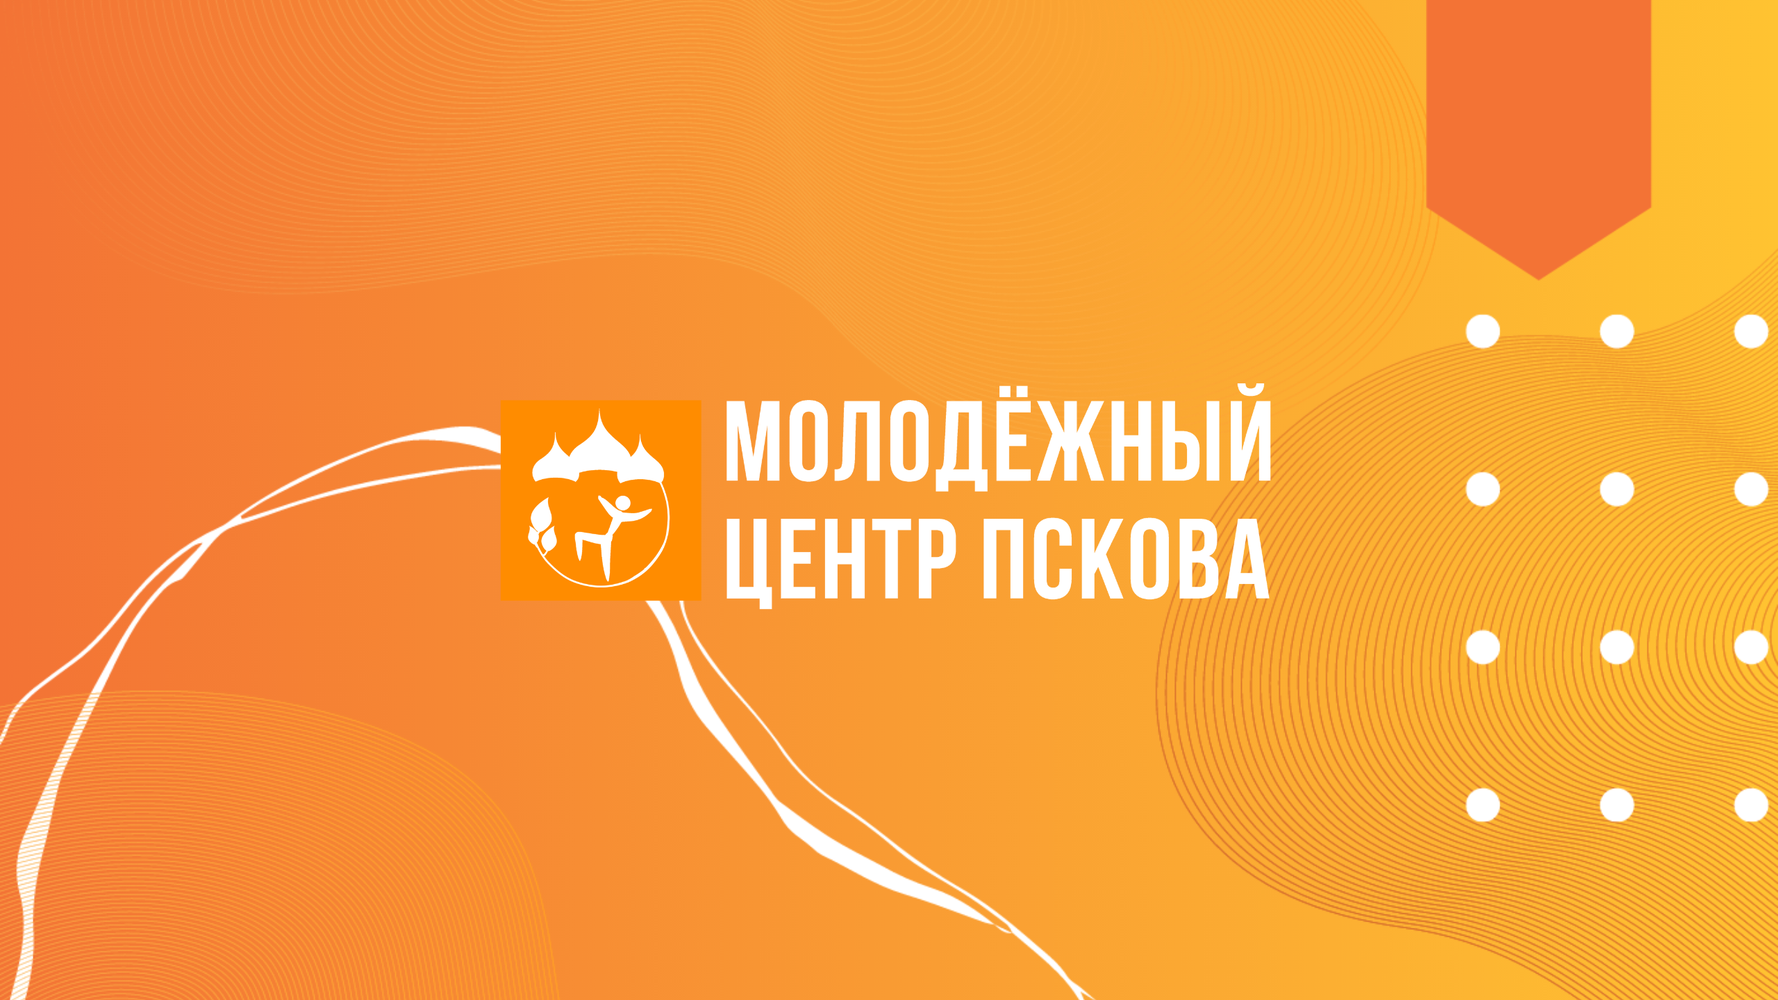 Псковский городской молодежный центр подготовил мобильную версию своего сайта для iPad и iPhone.